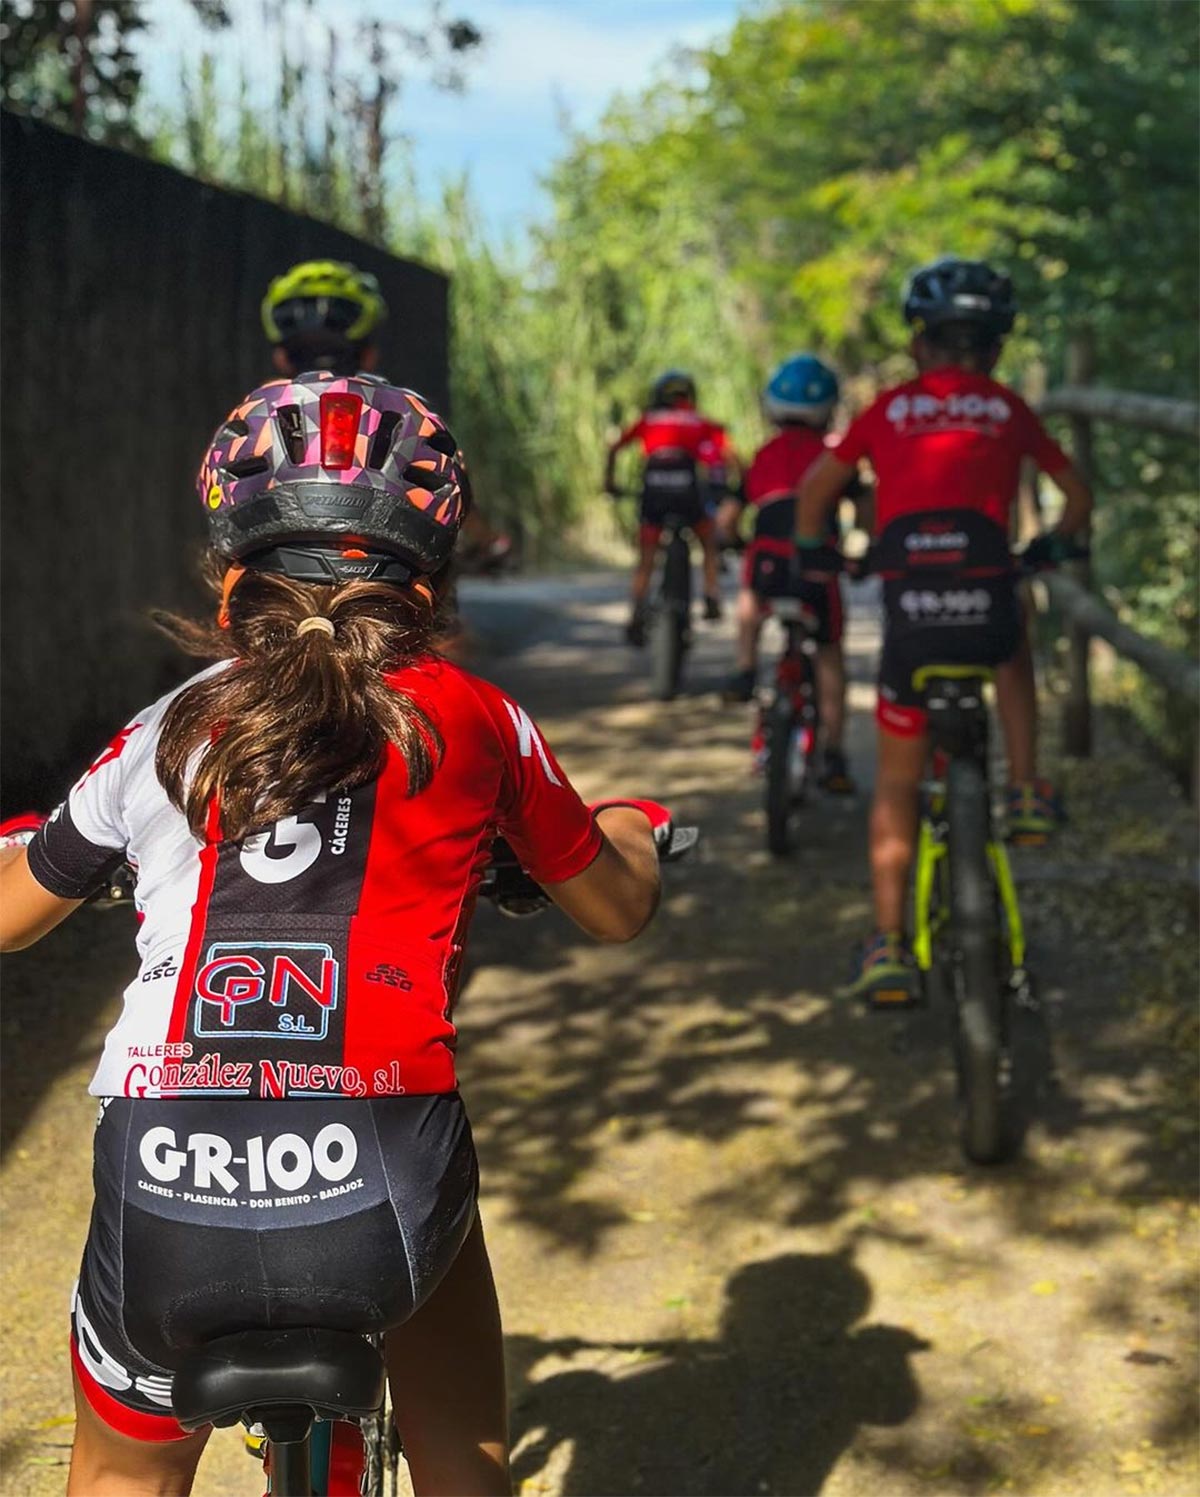 Electromercantil-GR100 Féminas: un nuevo horizonte para el ciclismo femenino en Extremadura